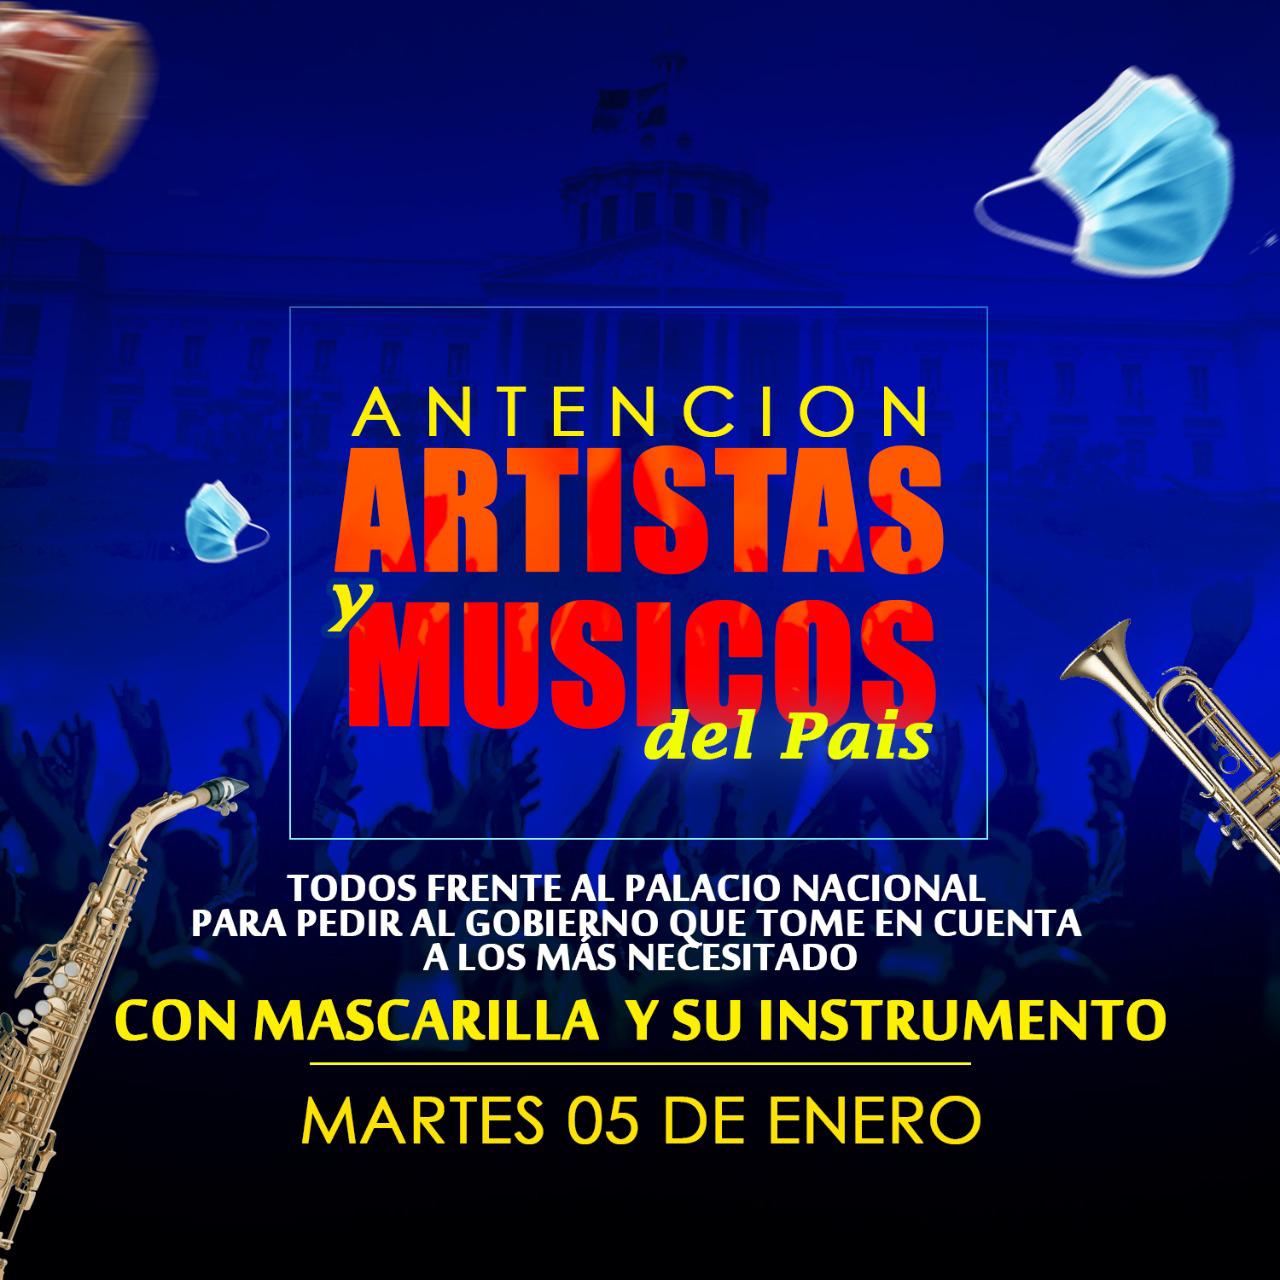 Artistas y músicos convocan nueva marcha frente al Palacio Nacional el próximo martes